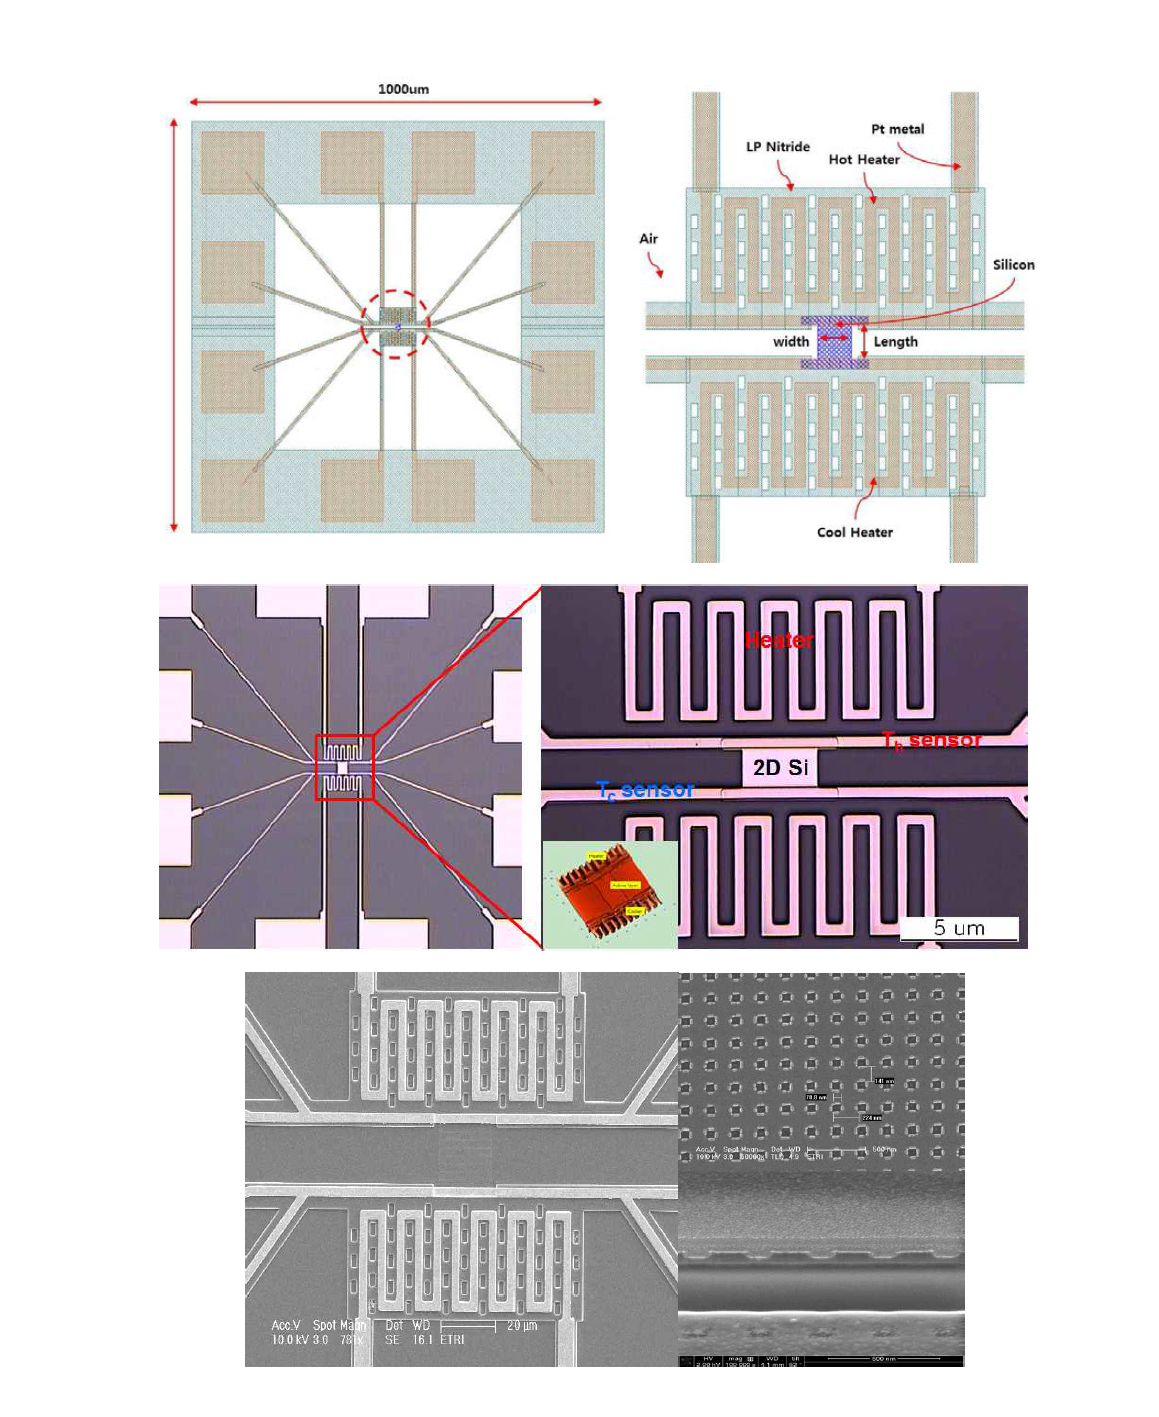 2차원 실리콘 열전재료 특성평가를 위한 측정구조체 설계 및 현미경(광학, 전자) 이미지